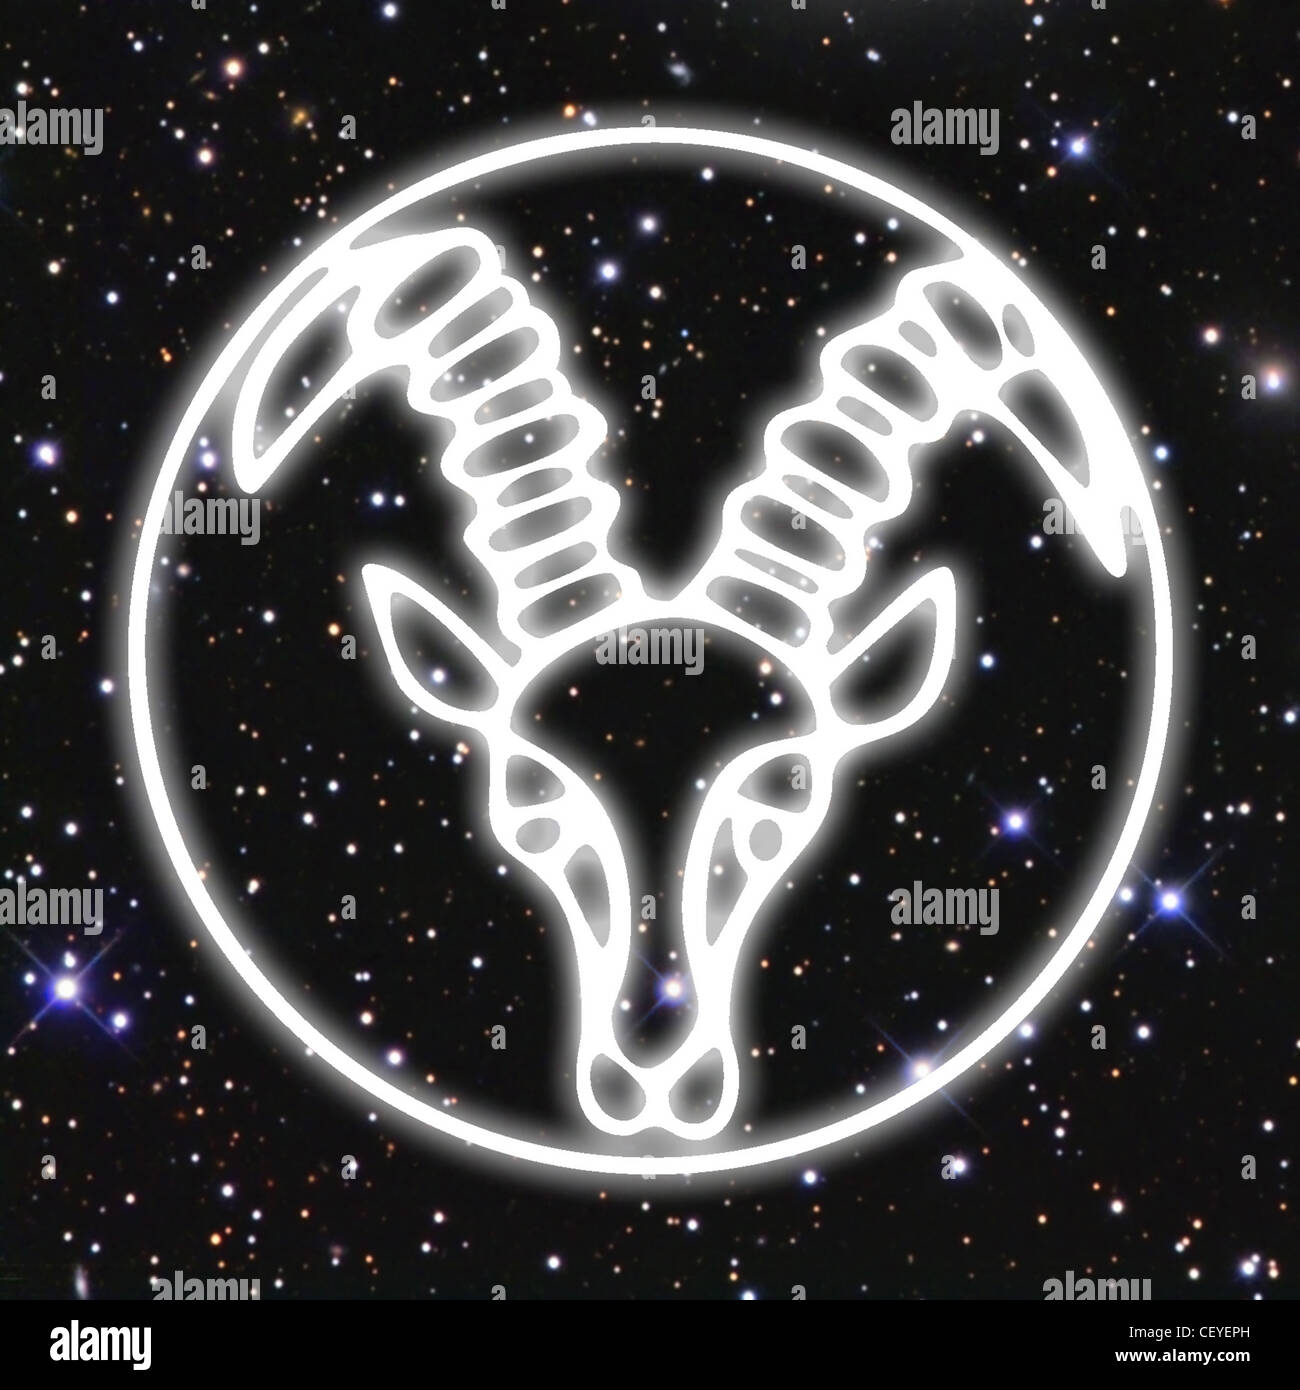 Une illustration de la tête blanche d'une chèvre dans un cercle, défini dans un contexte de l'espace rempli d'étoiles Banque D'Images